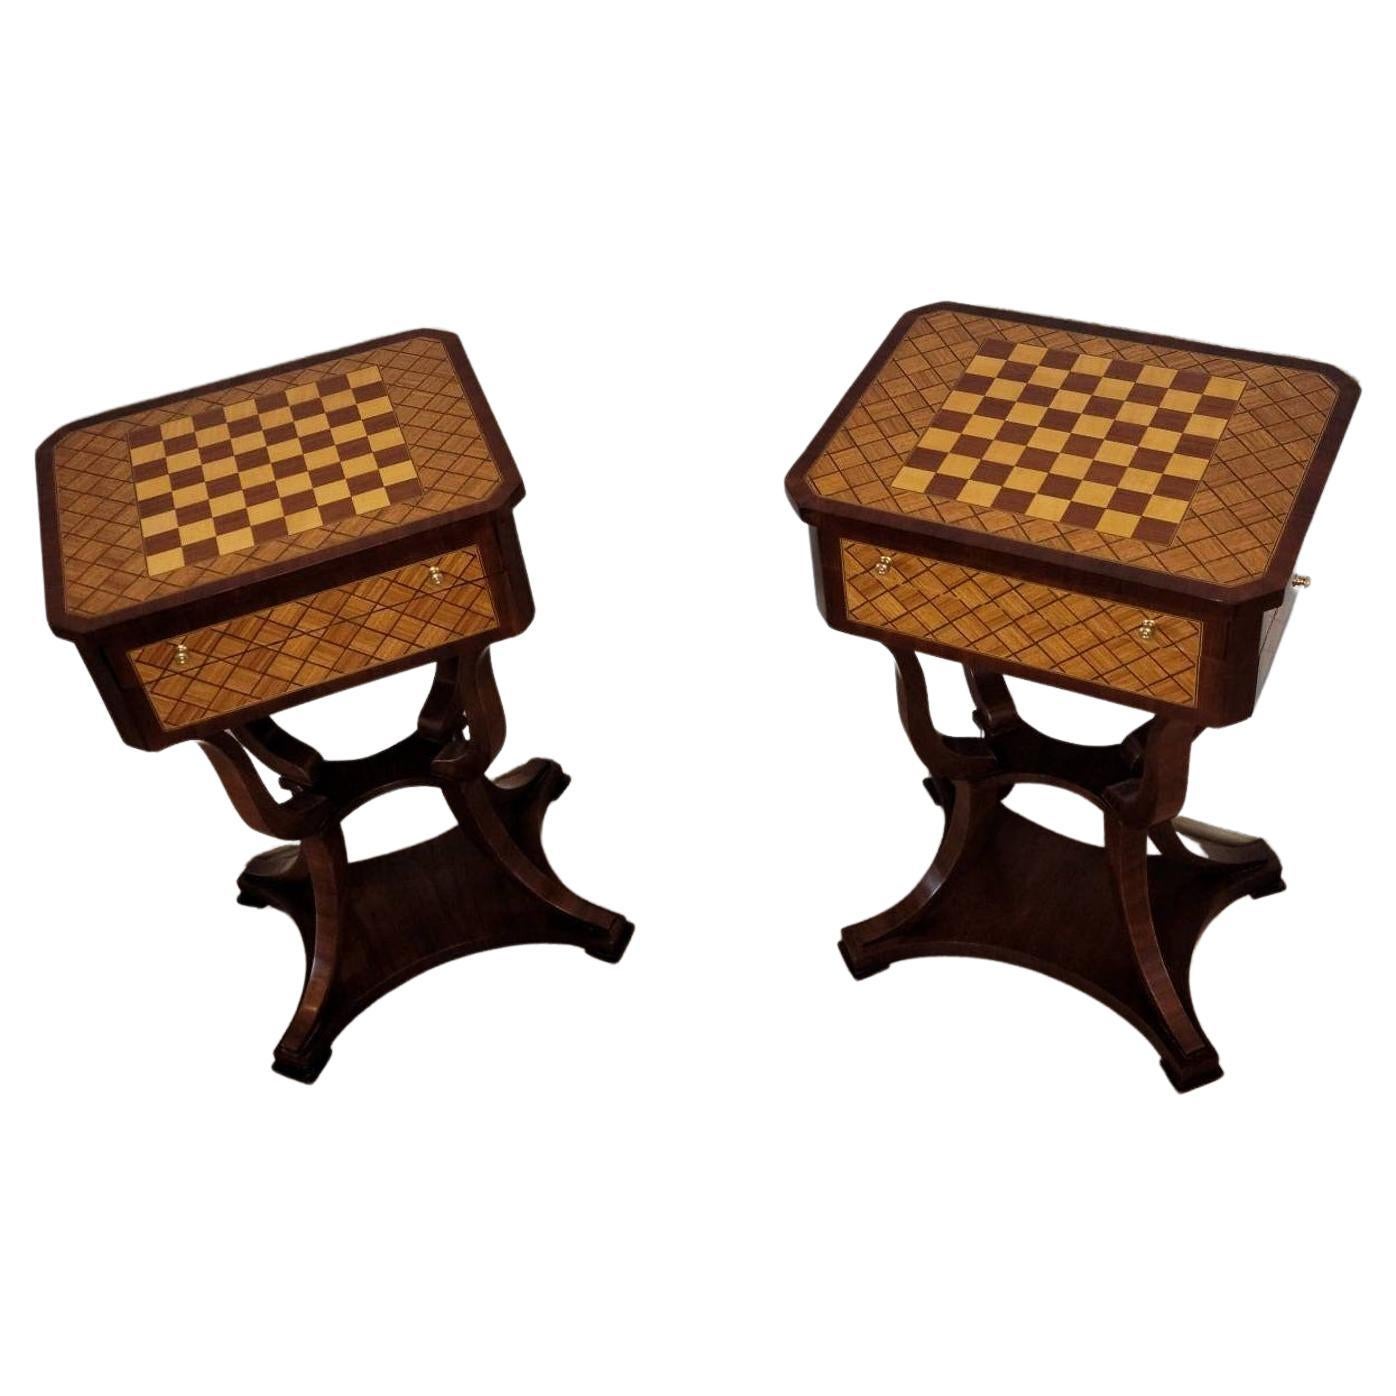 Paar italienische neoklassizistische Schachbrett-Parkett-Tische mit Intarsien